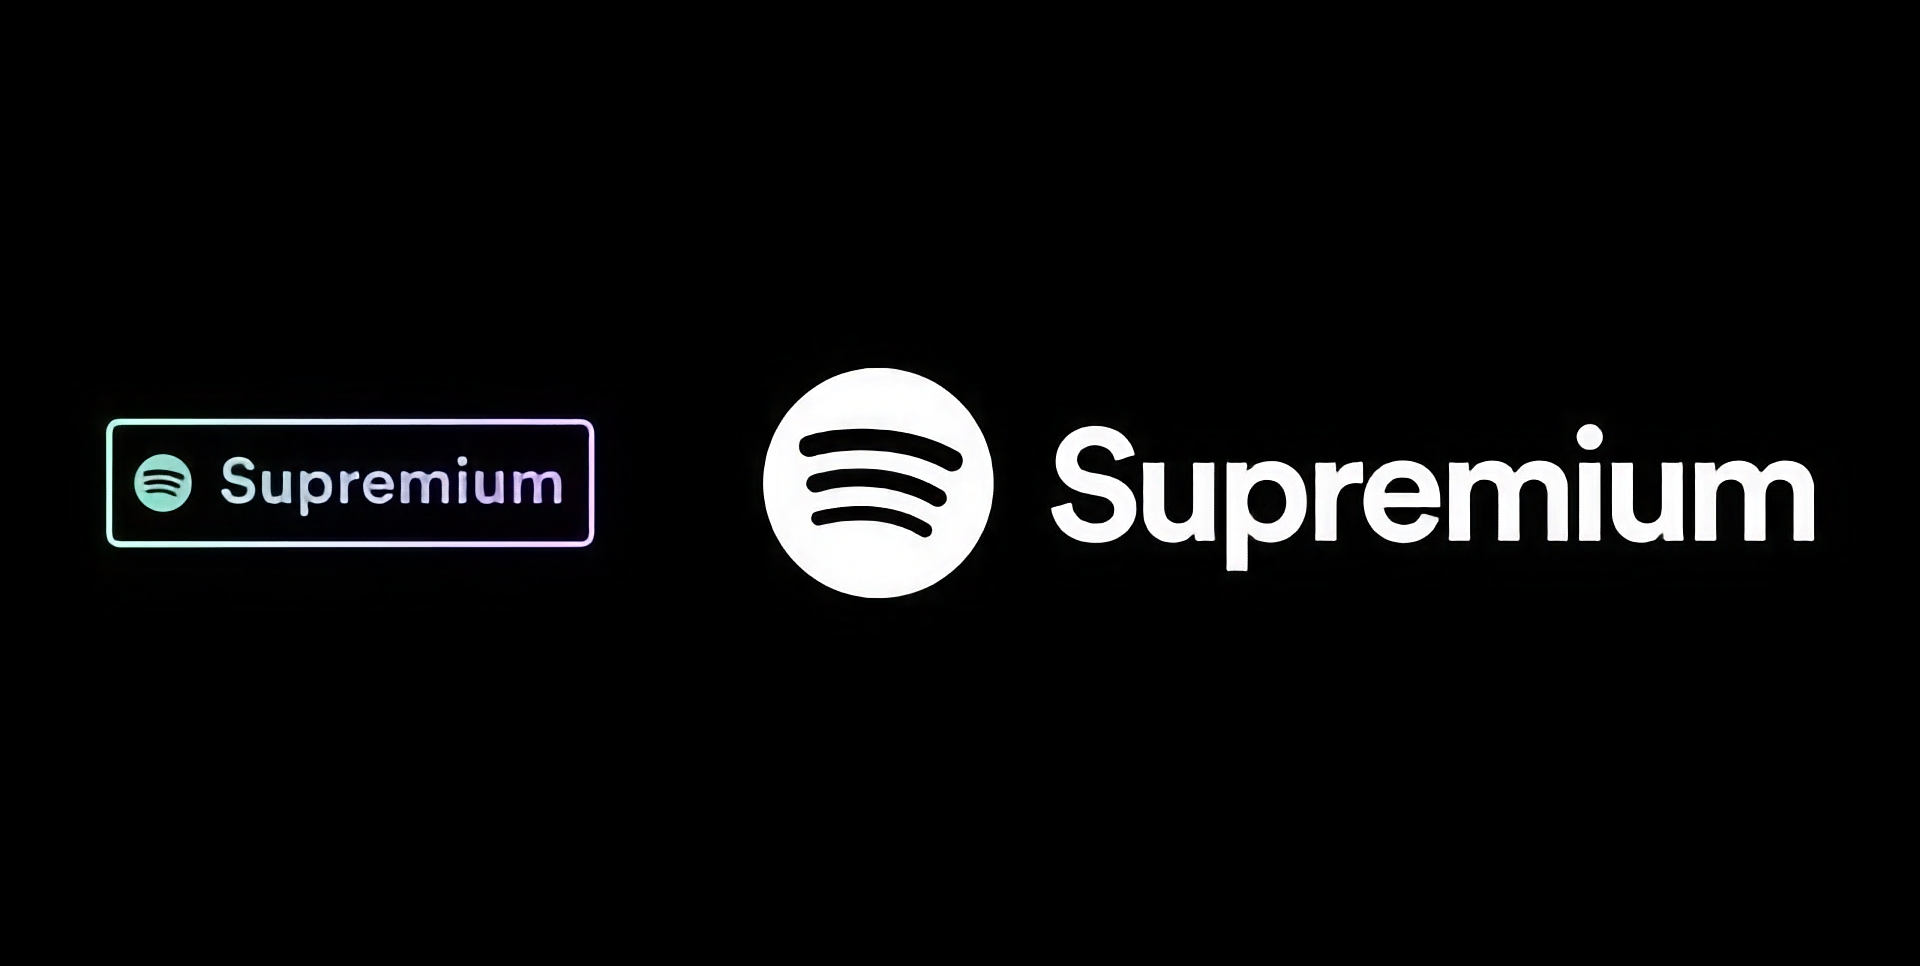 Spotify s'apprête à lancer un plan Supremium avec la prise en charge de l'audio Lossless et un prix de 19$ par mois.